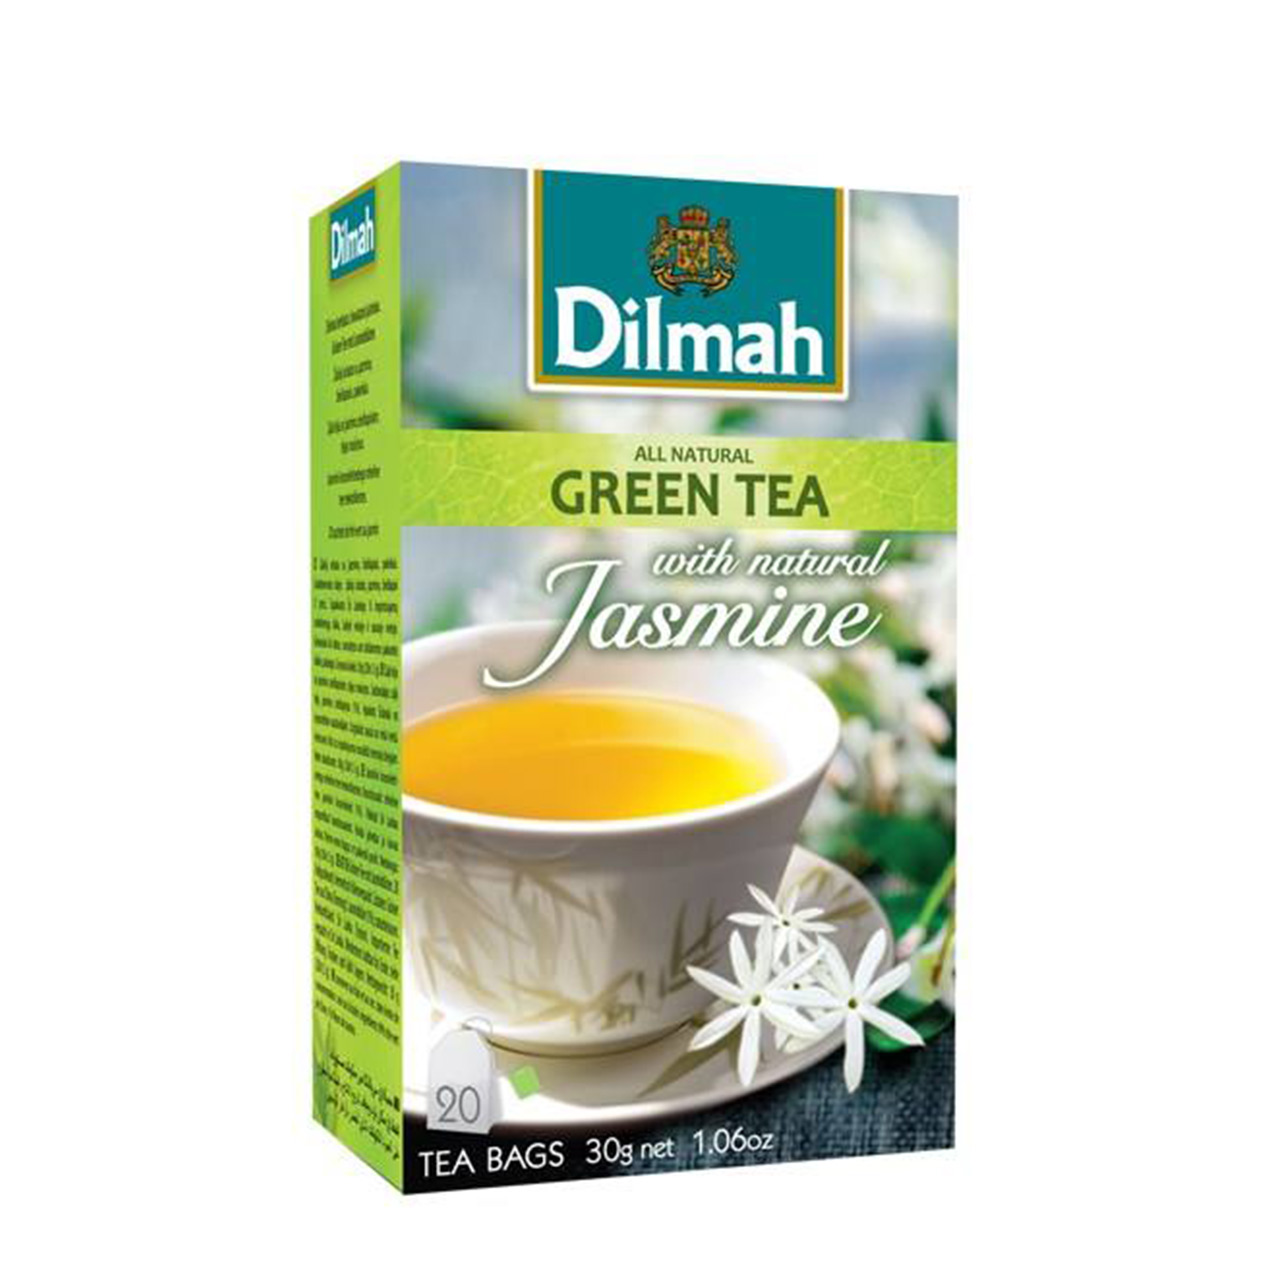 چای سبز دیلما با طعم یاس مدل D6 بسته 20 عددی